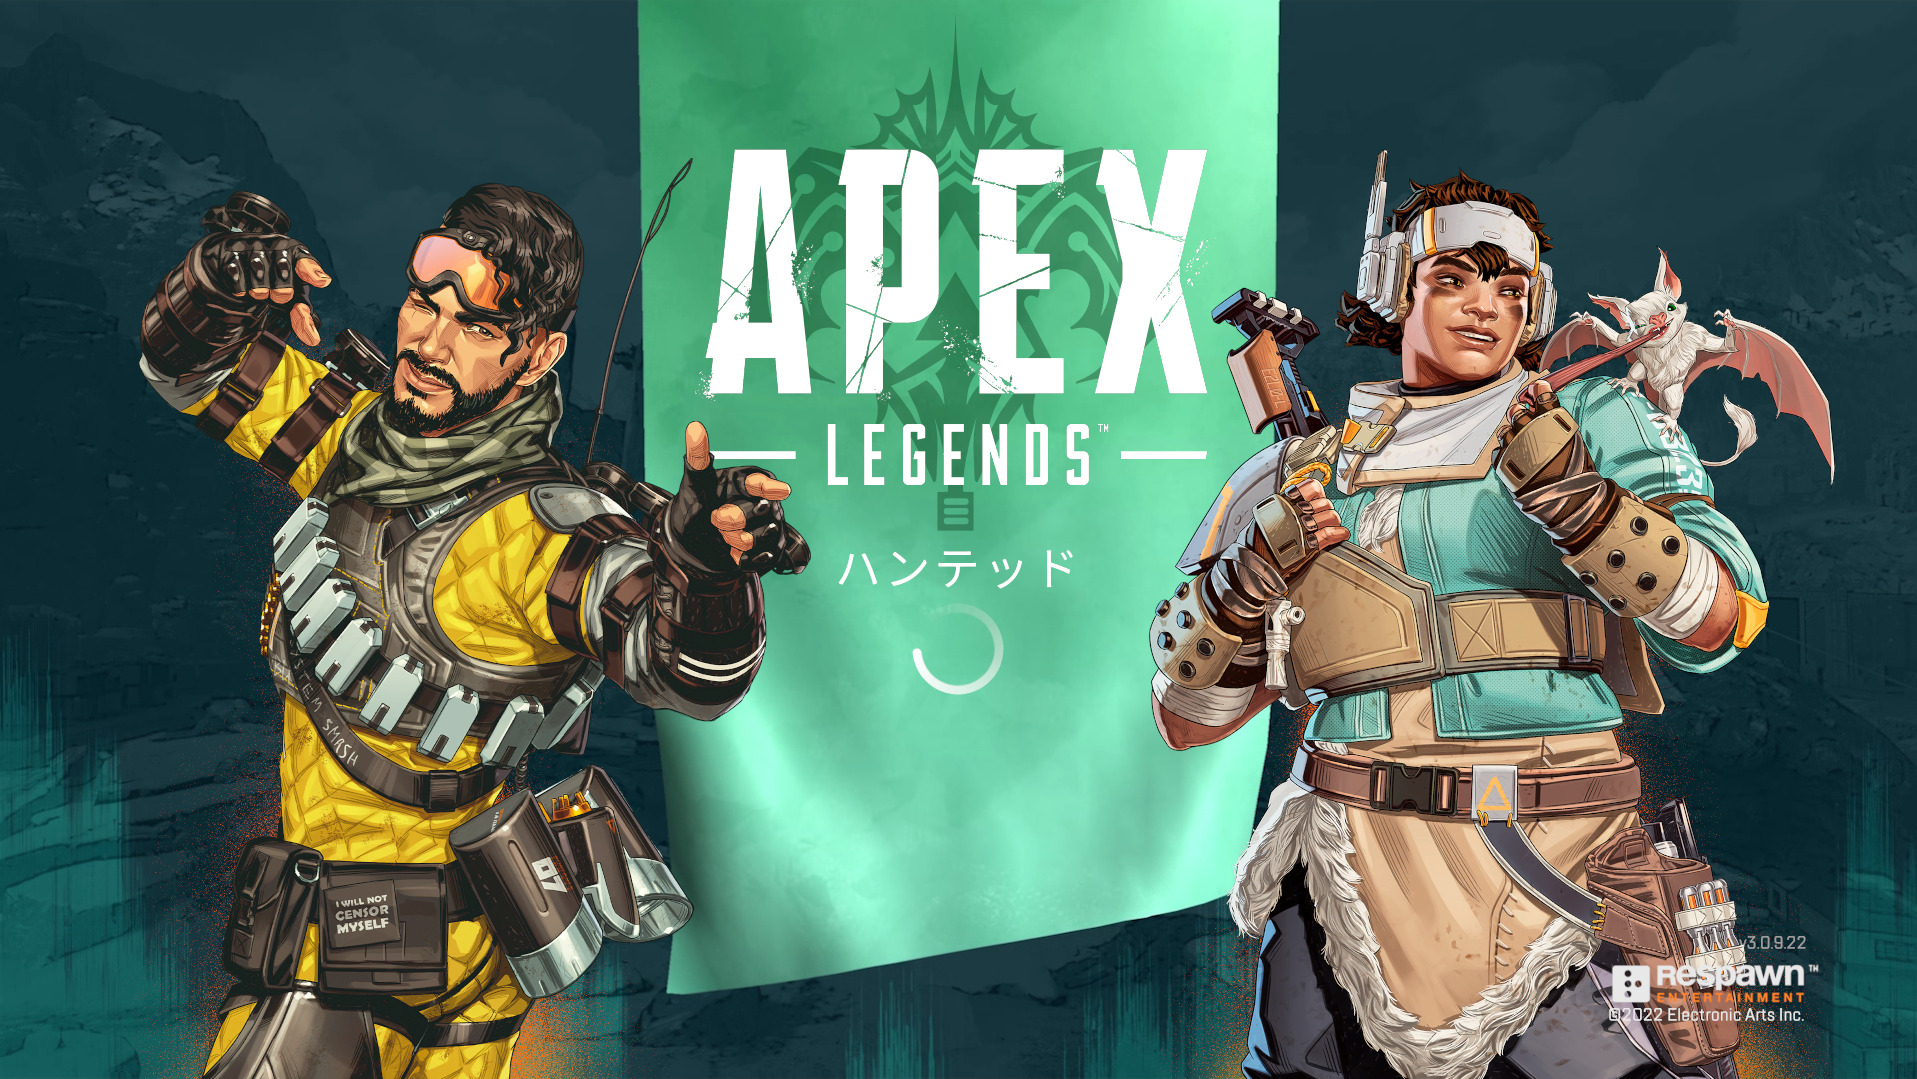 【Apex Legends】シーズン14 はいつまで？ランクの期間とマップについて【エーペックスレジェンズ】